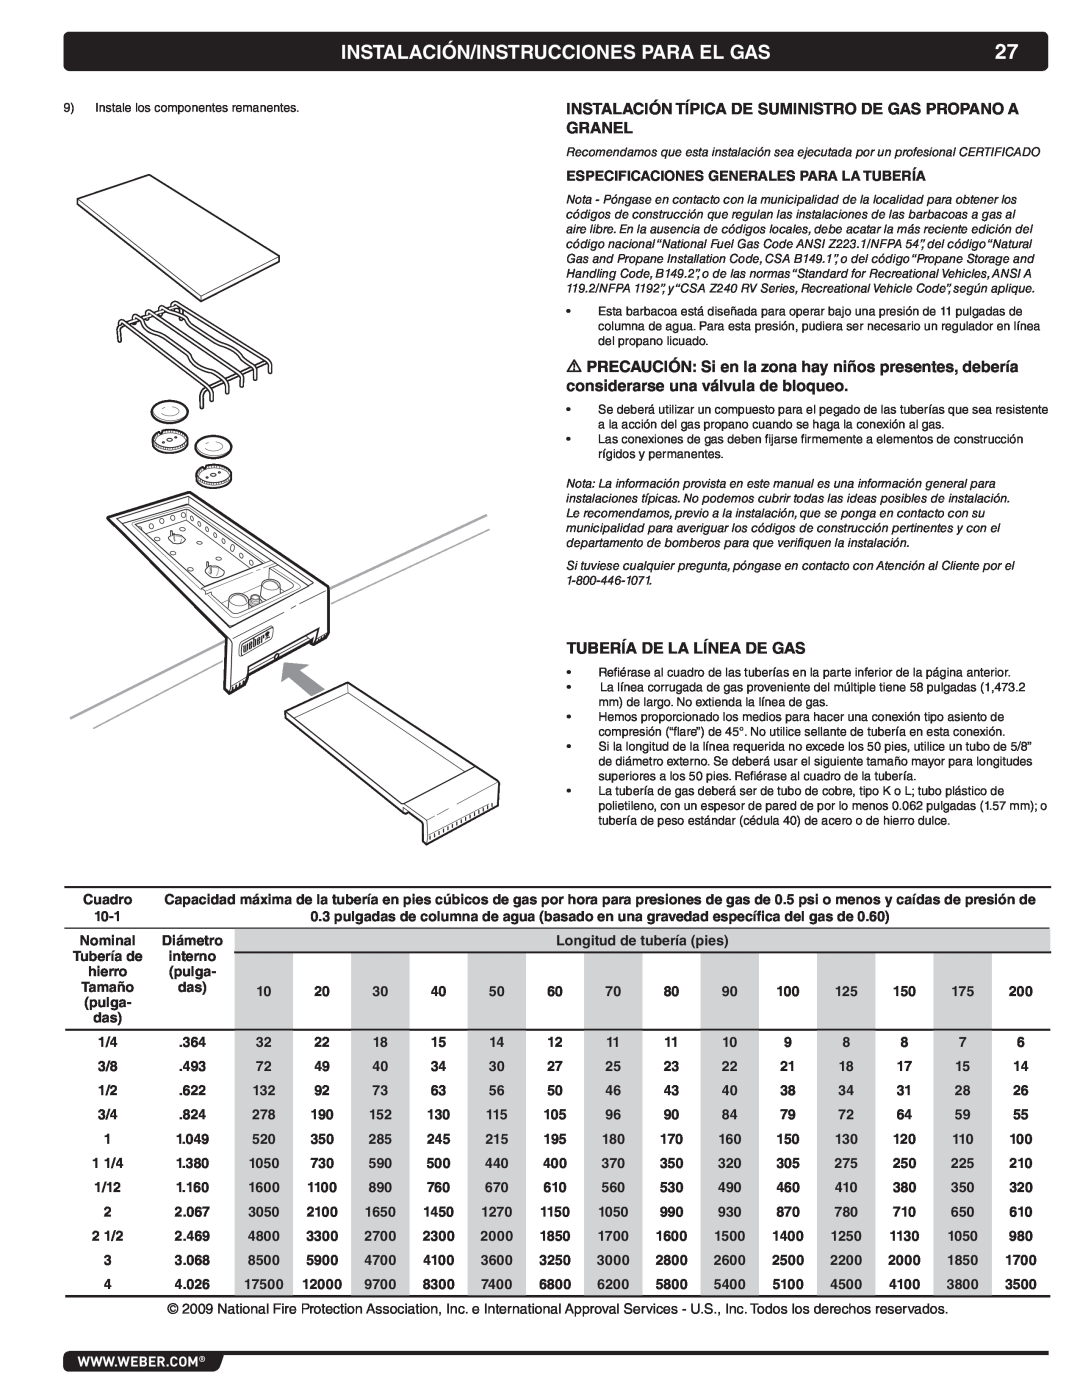 Weber 56069 manual Instalación/Instrucciones Para El Gas, Instalación Típica De Suministro De Gas Propano A Granel 